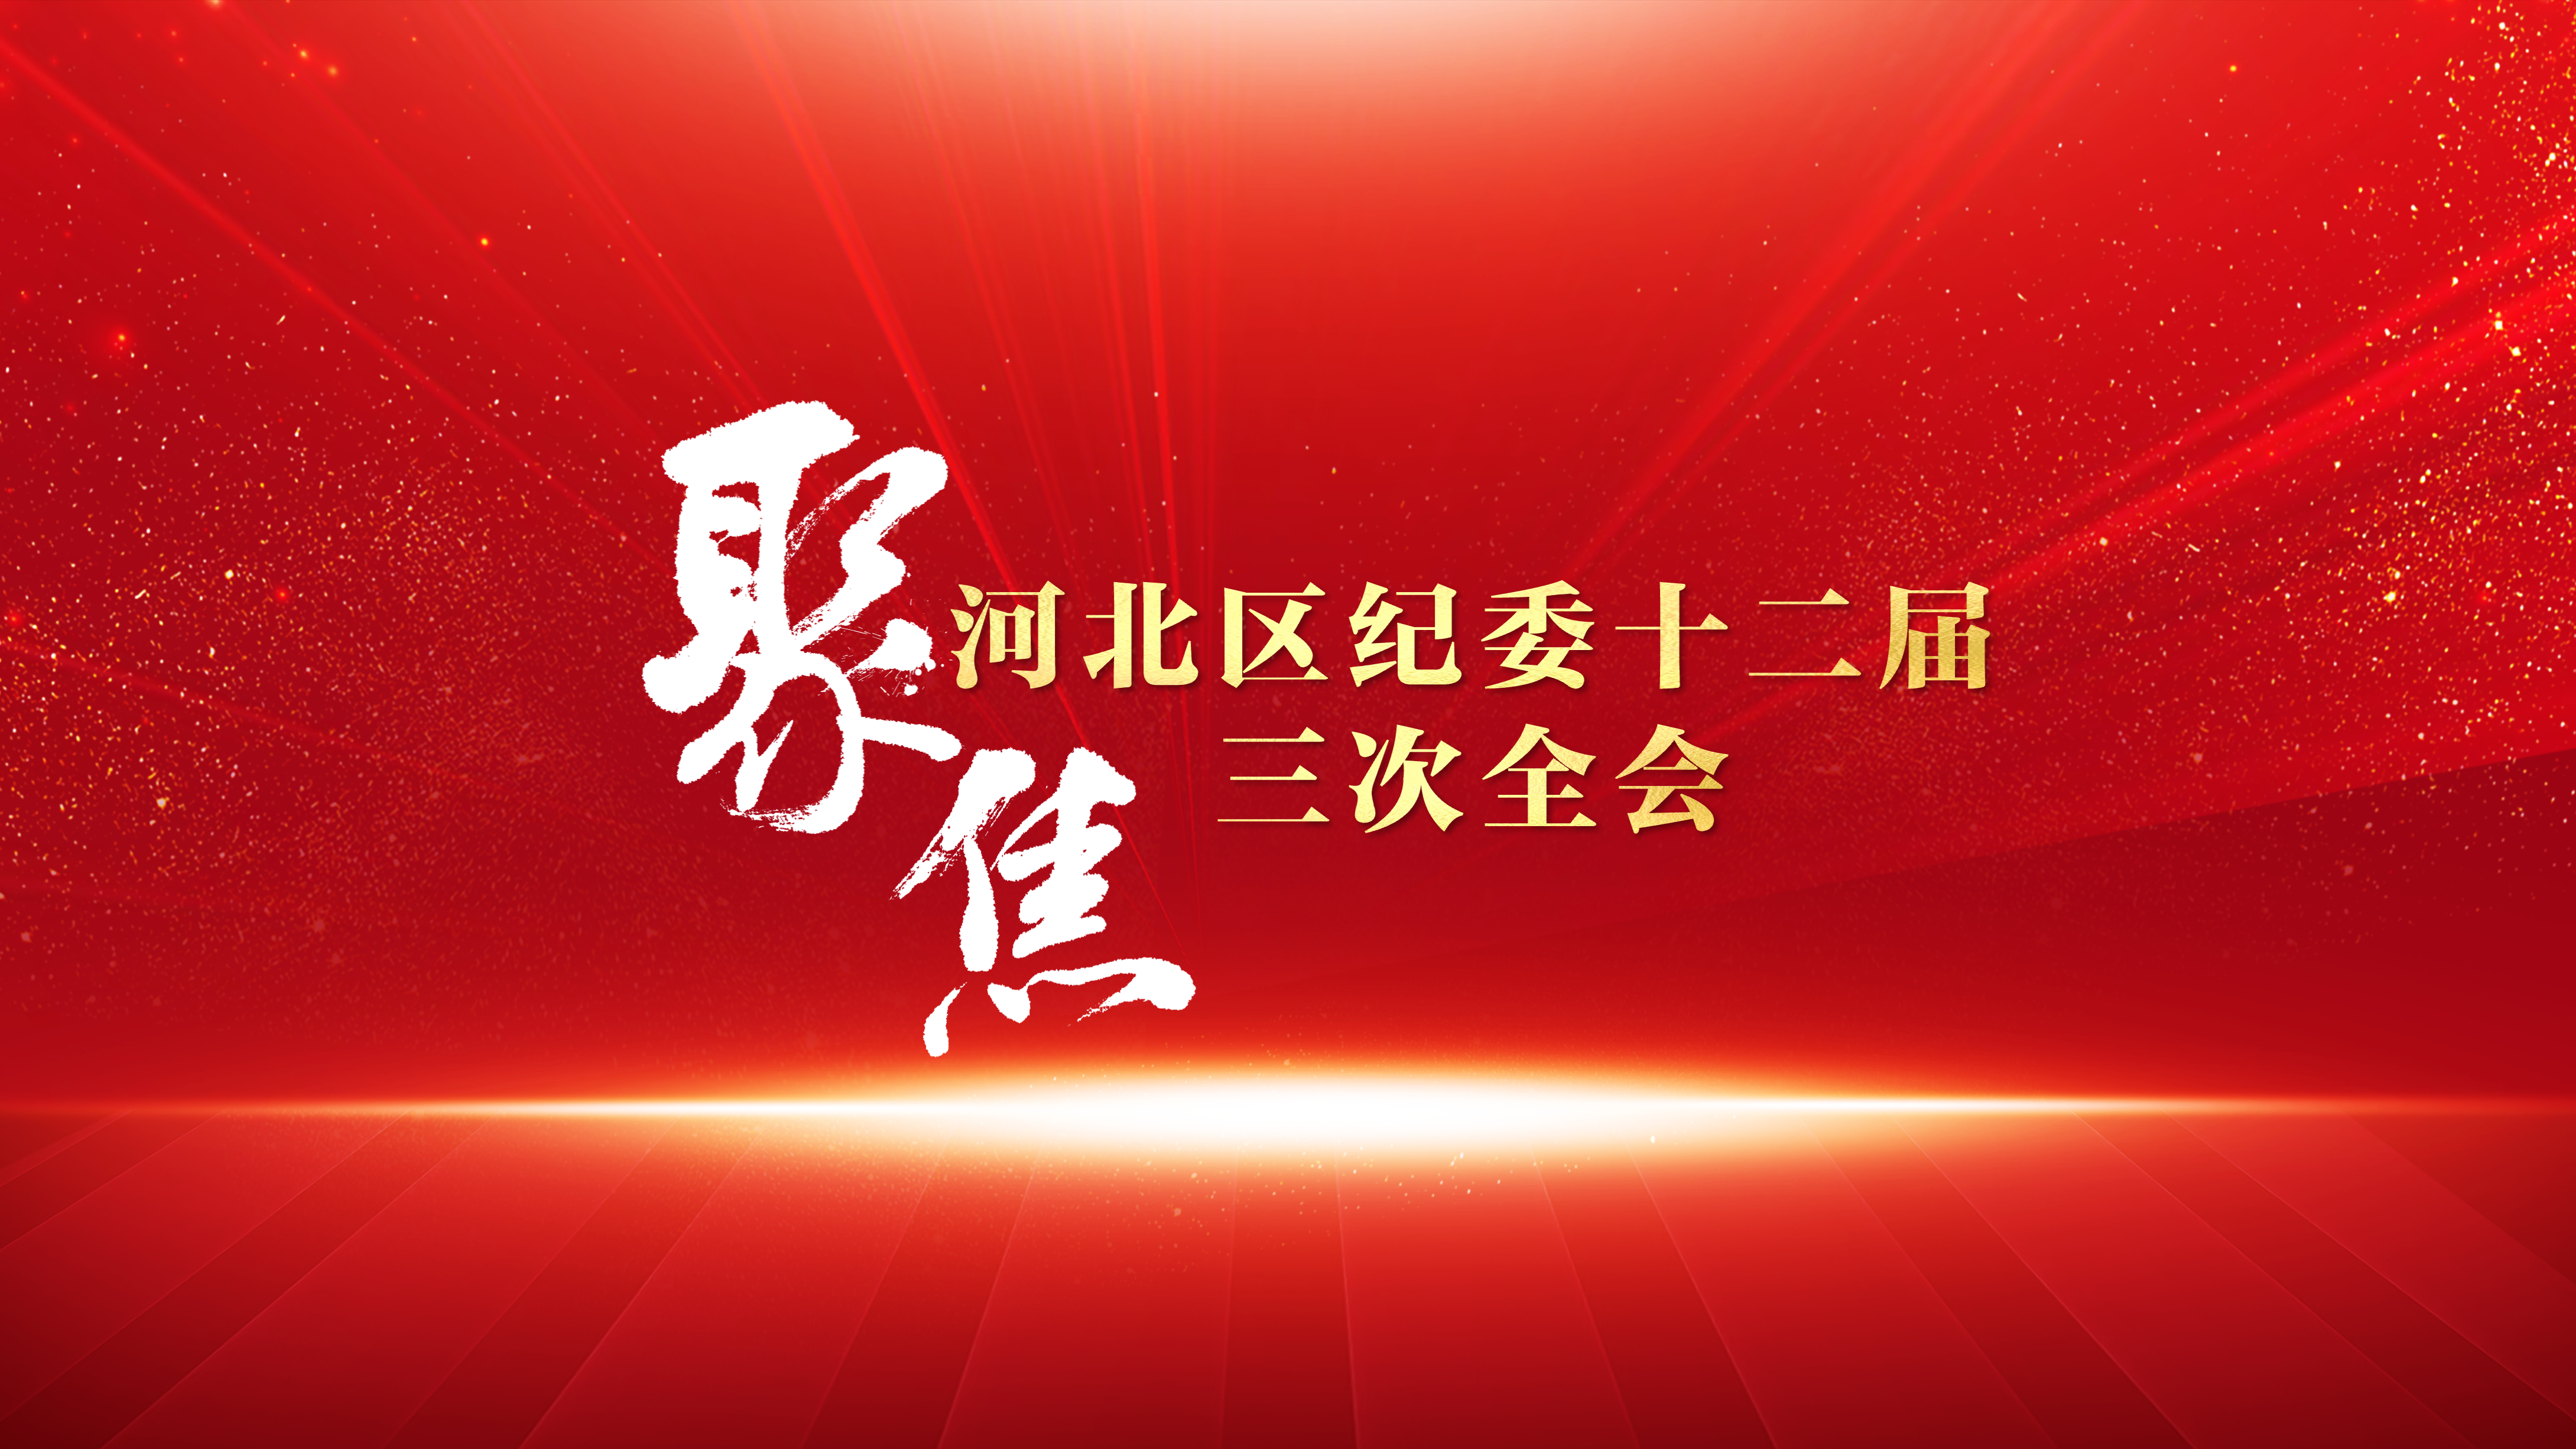 中国共产党天津市河北区第十二届纪律检查委员会第三次全体会议召开